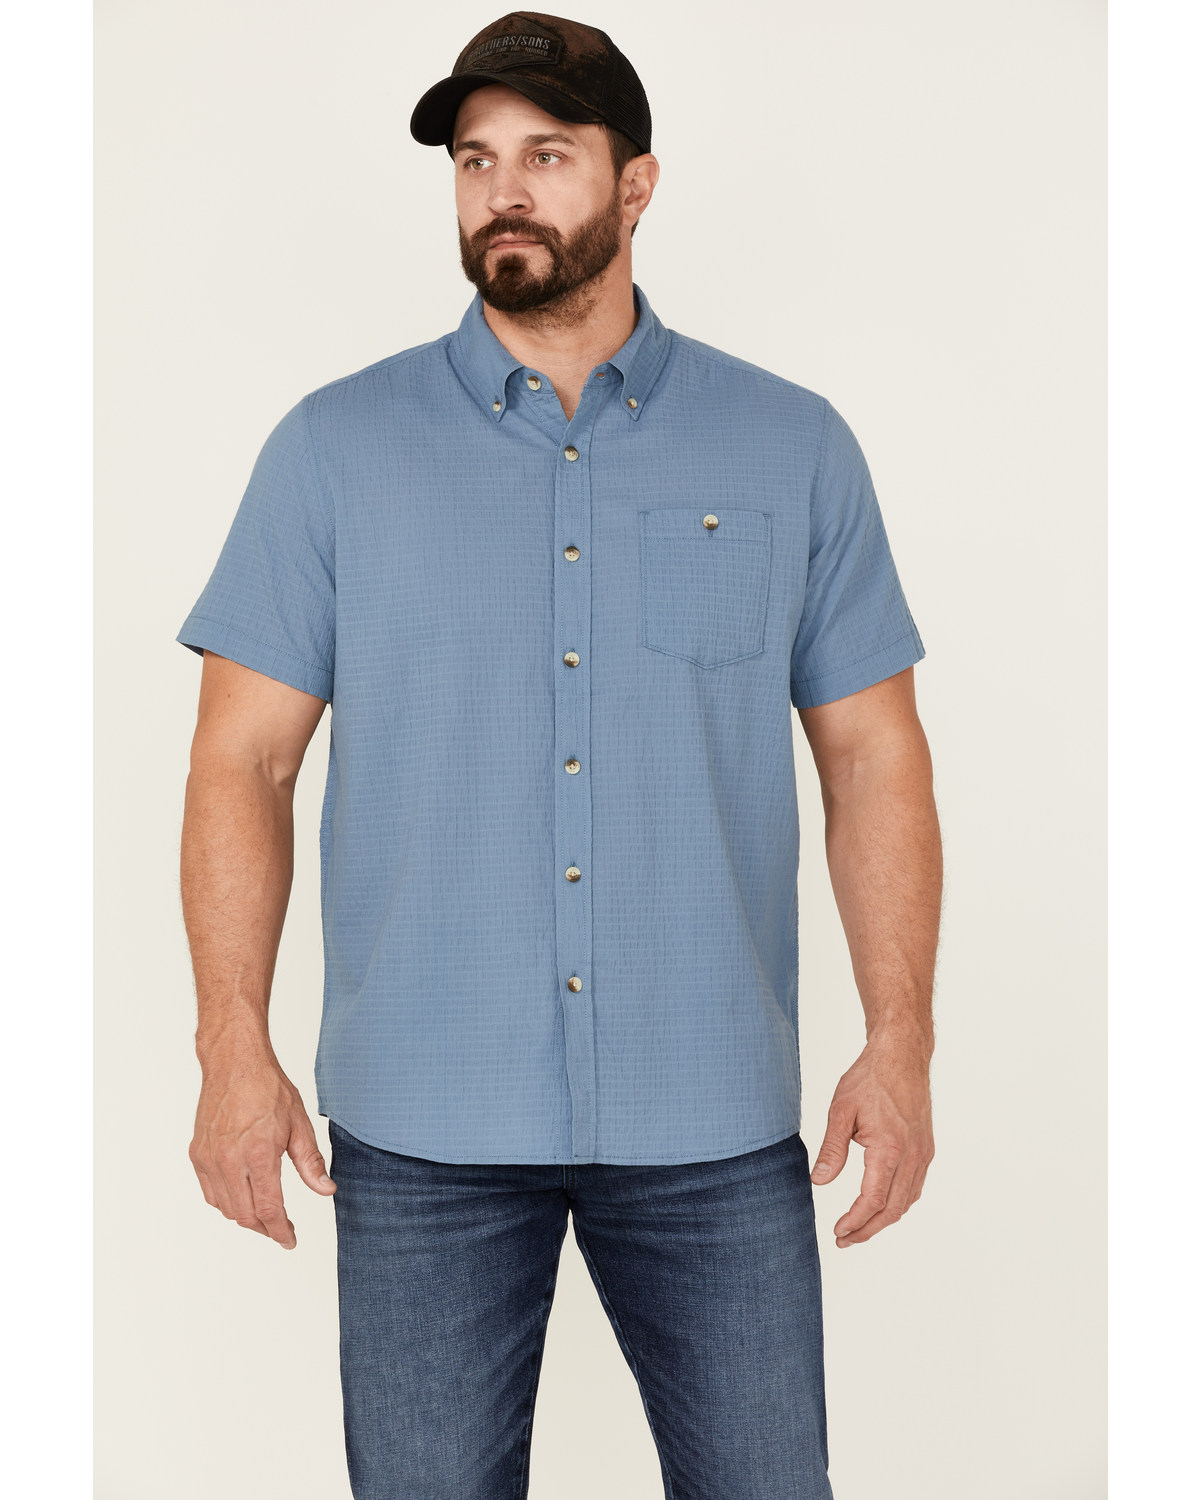 North River Men's Seersucker Short Sleeve Button Down Western Shirt